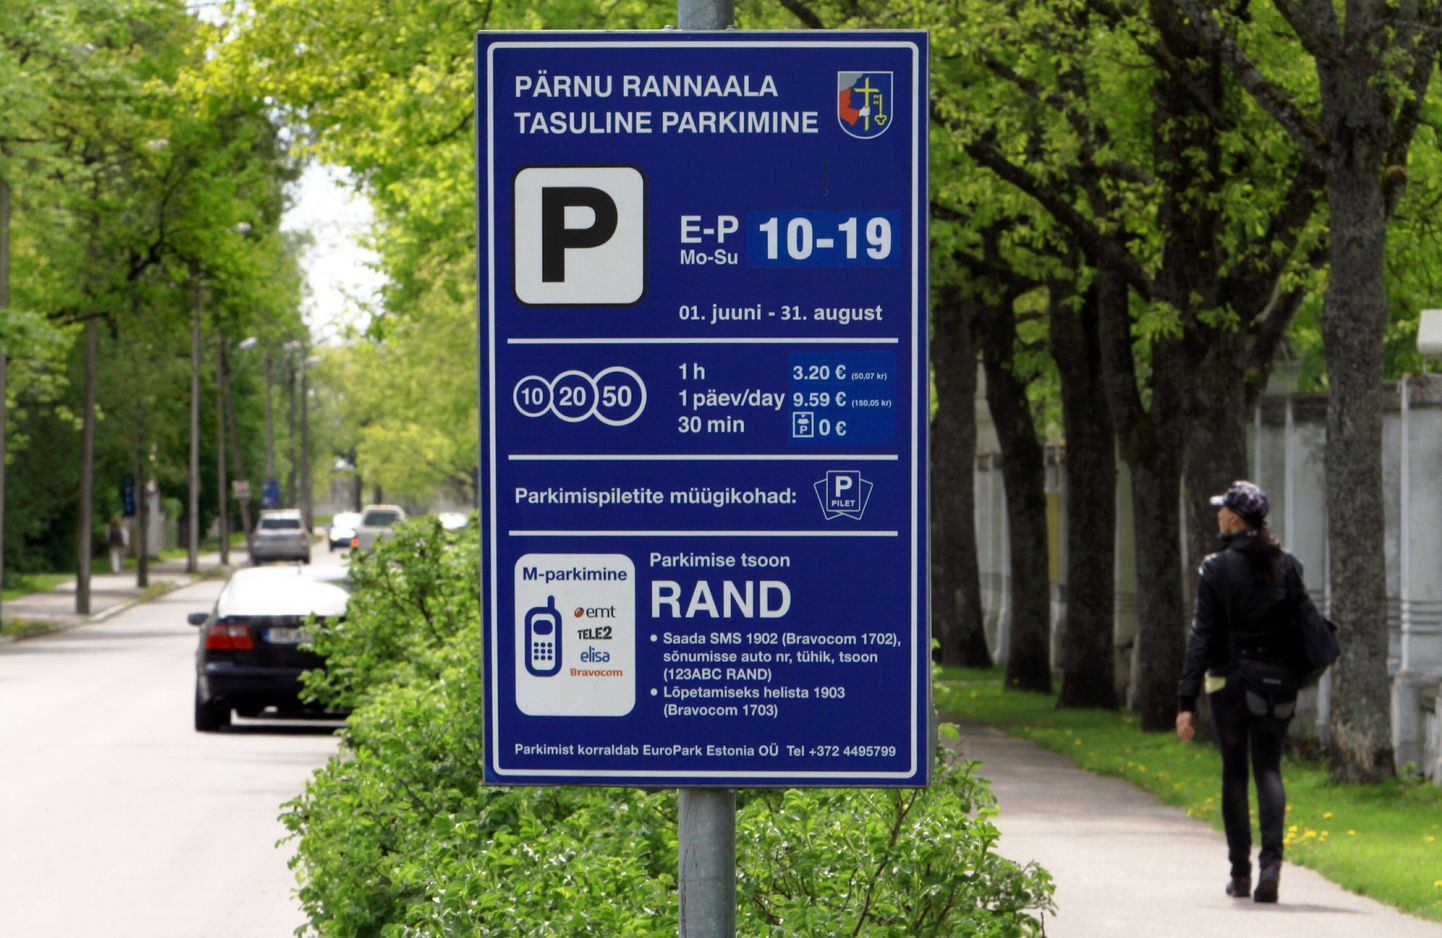 Pärnus vahetub tasulise parkimise korraldaja.